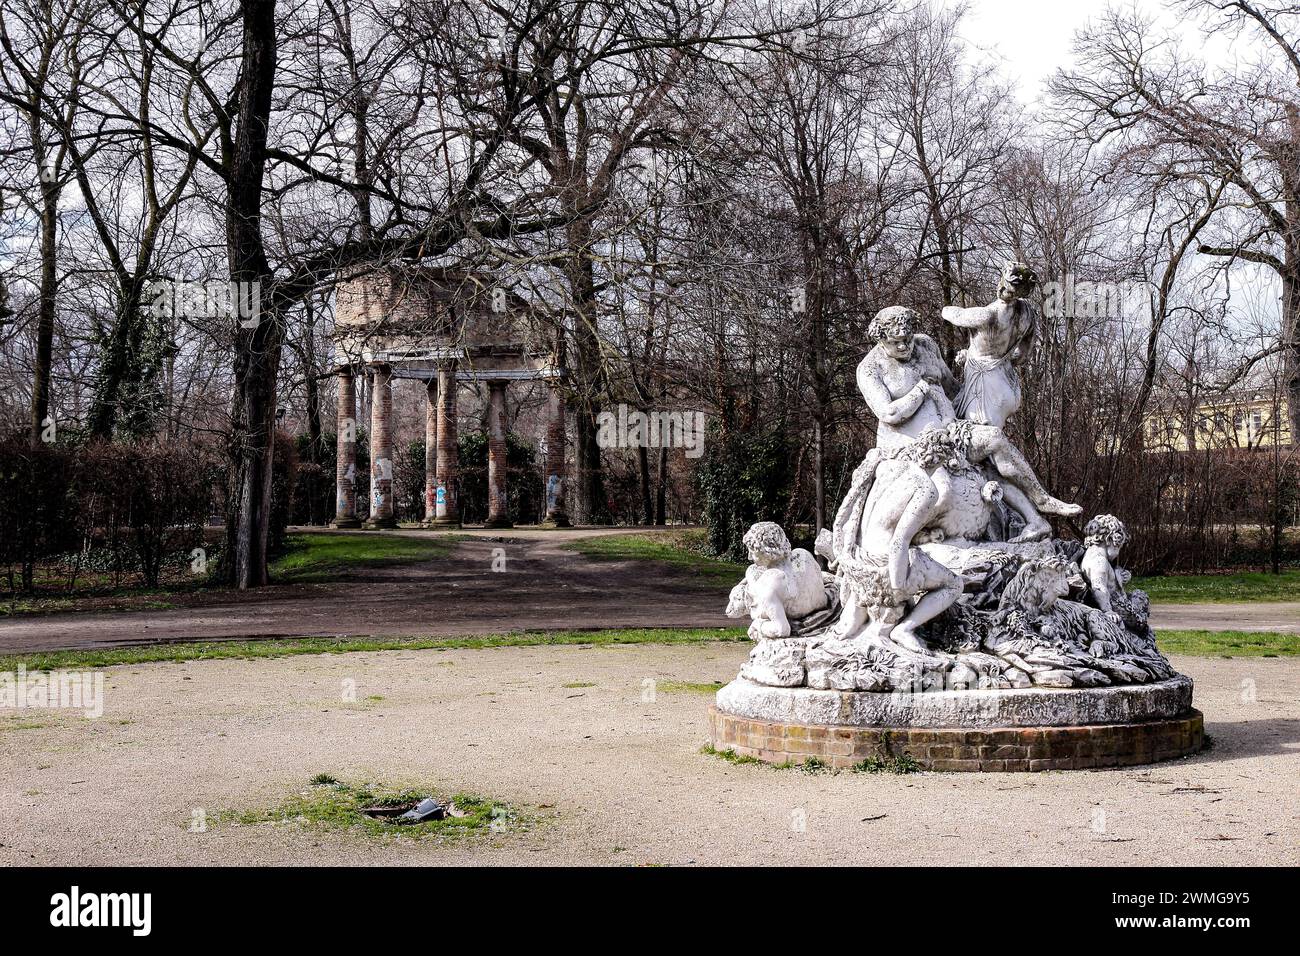 Im Ducale Park von Parma: Ein ikonischer Tempel inmitten üppigen Grüns, geschmückt mit Statuen und Säulen, der zeitlose Schönheit und Gelassenheit ausstrahlt. Stockfoto